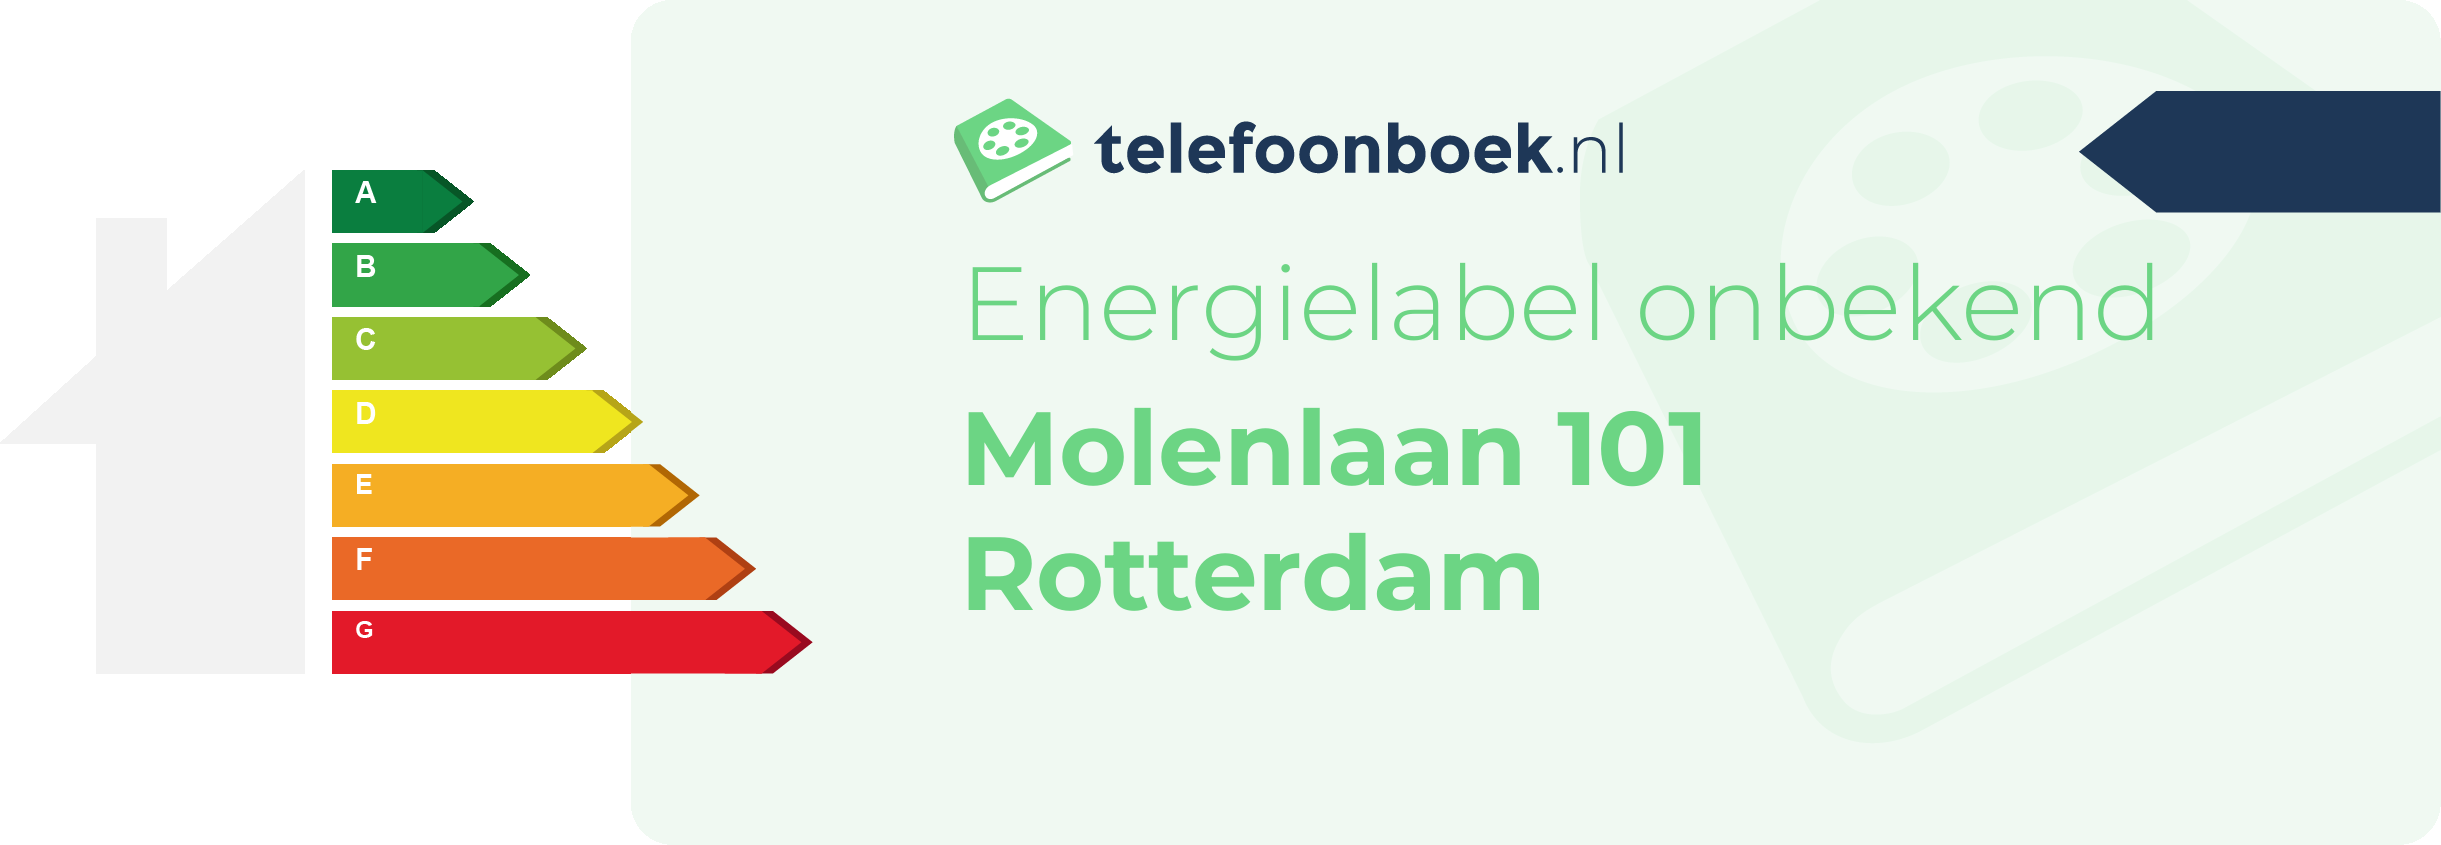 Energielabel Molenlaan 101 Rotterdam